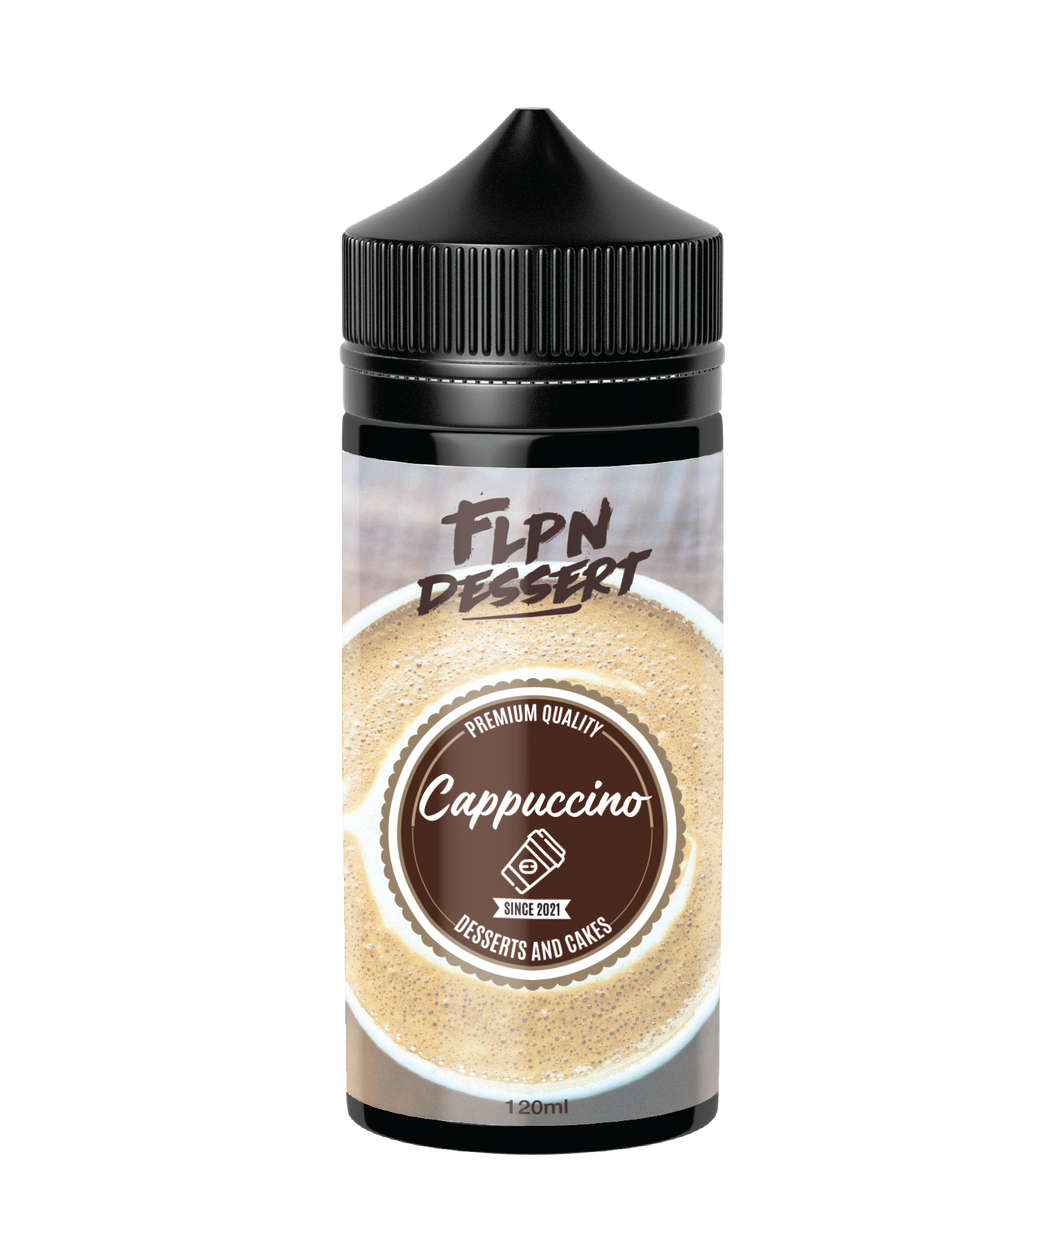 Flpn Dessert - Cappuccino 120ml